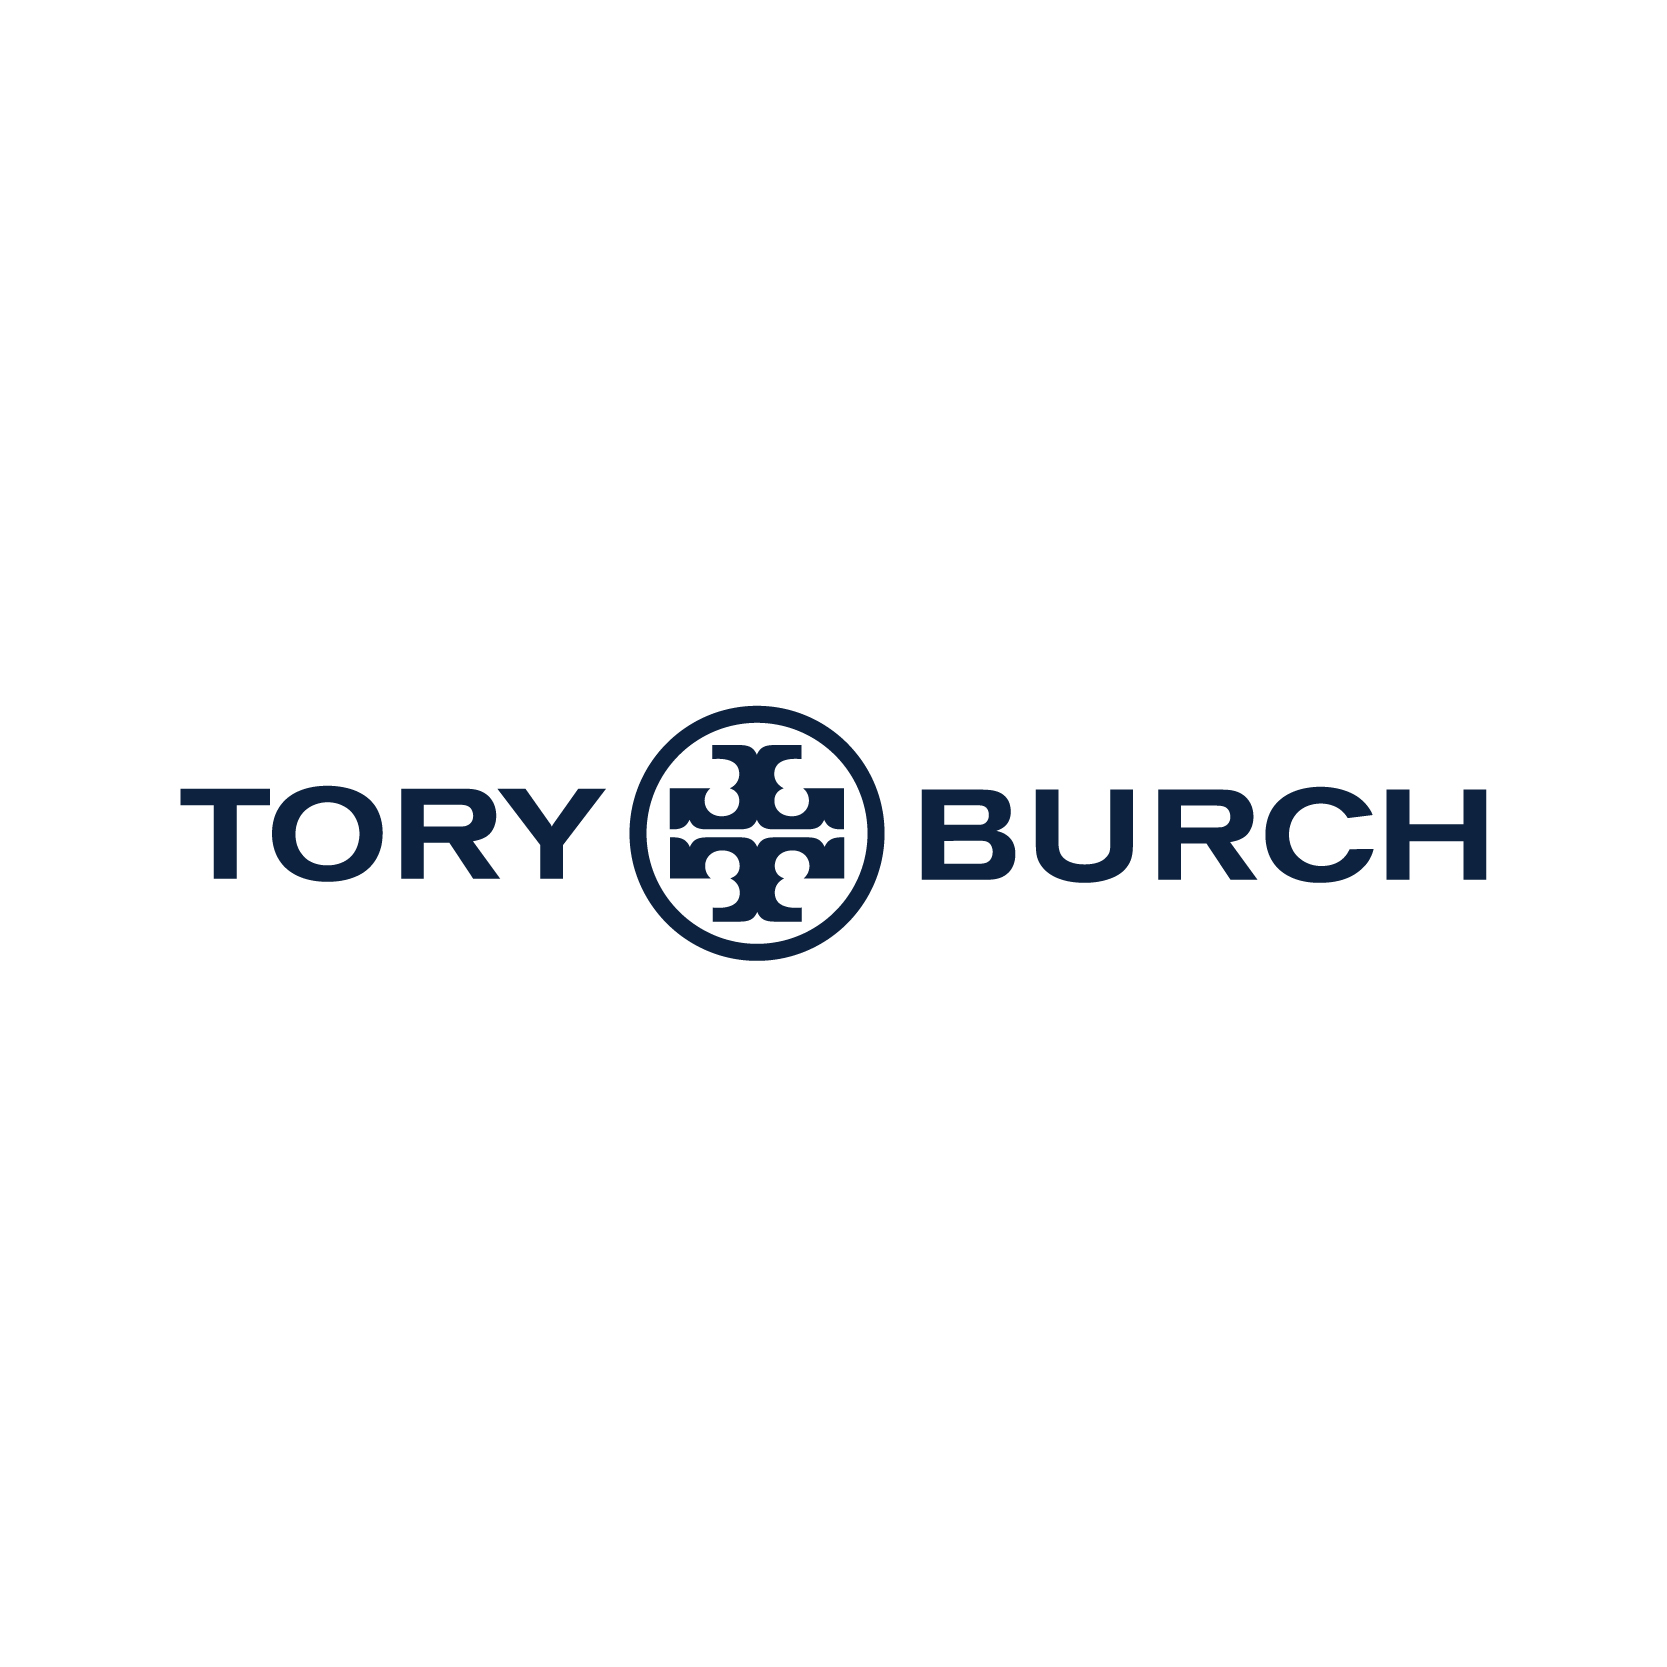 Tory Burch kortingsbonnen 